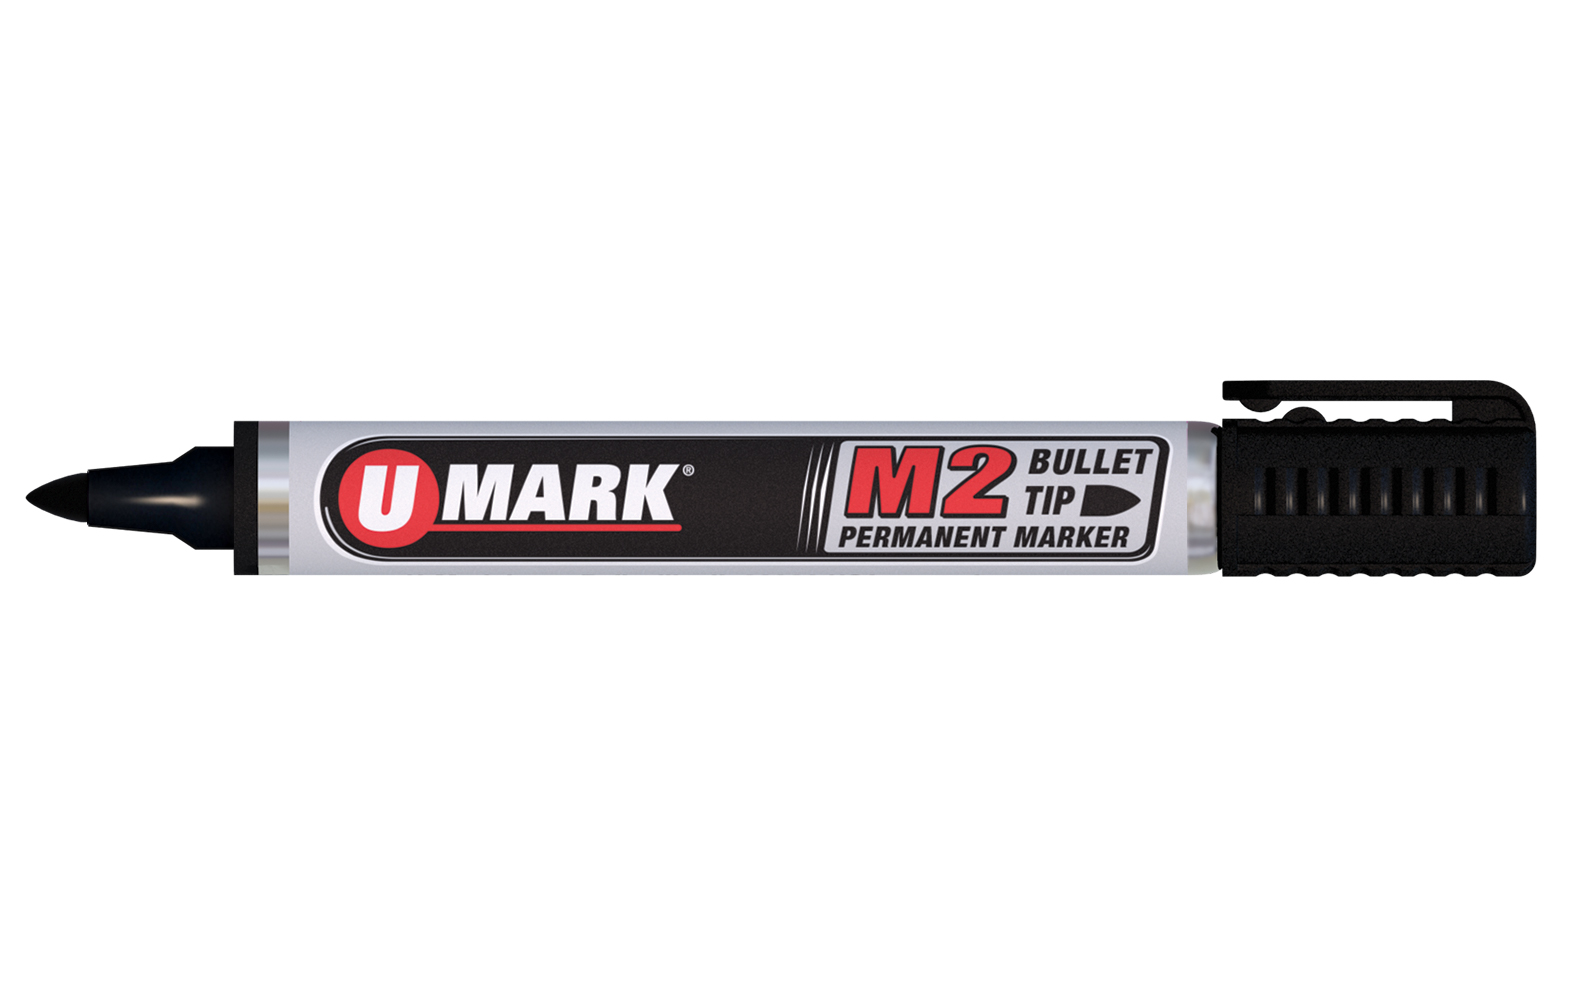 Eigenlijk koppeling omringen M2 Bullet Tip Permanent Marker